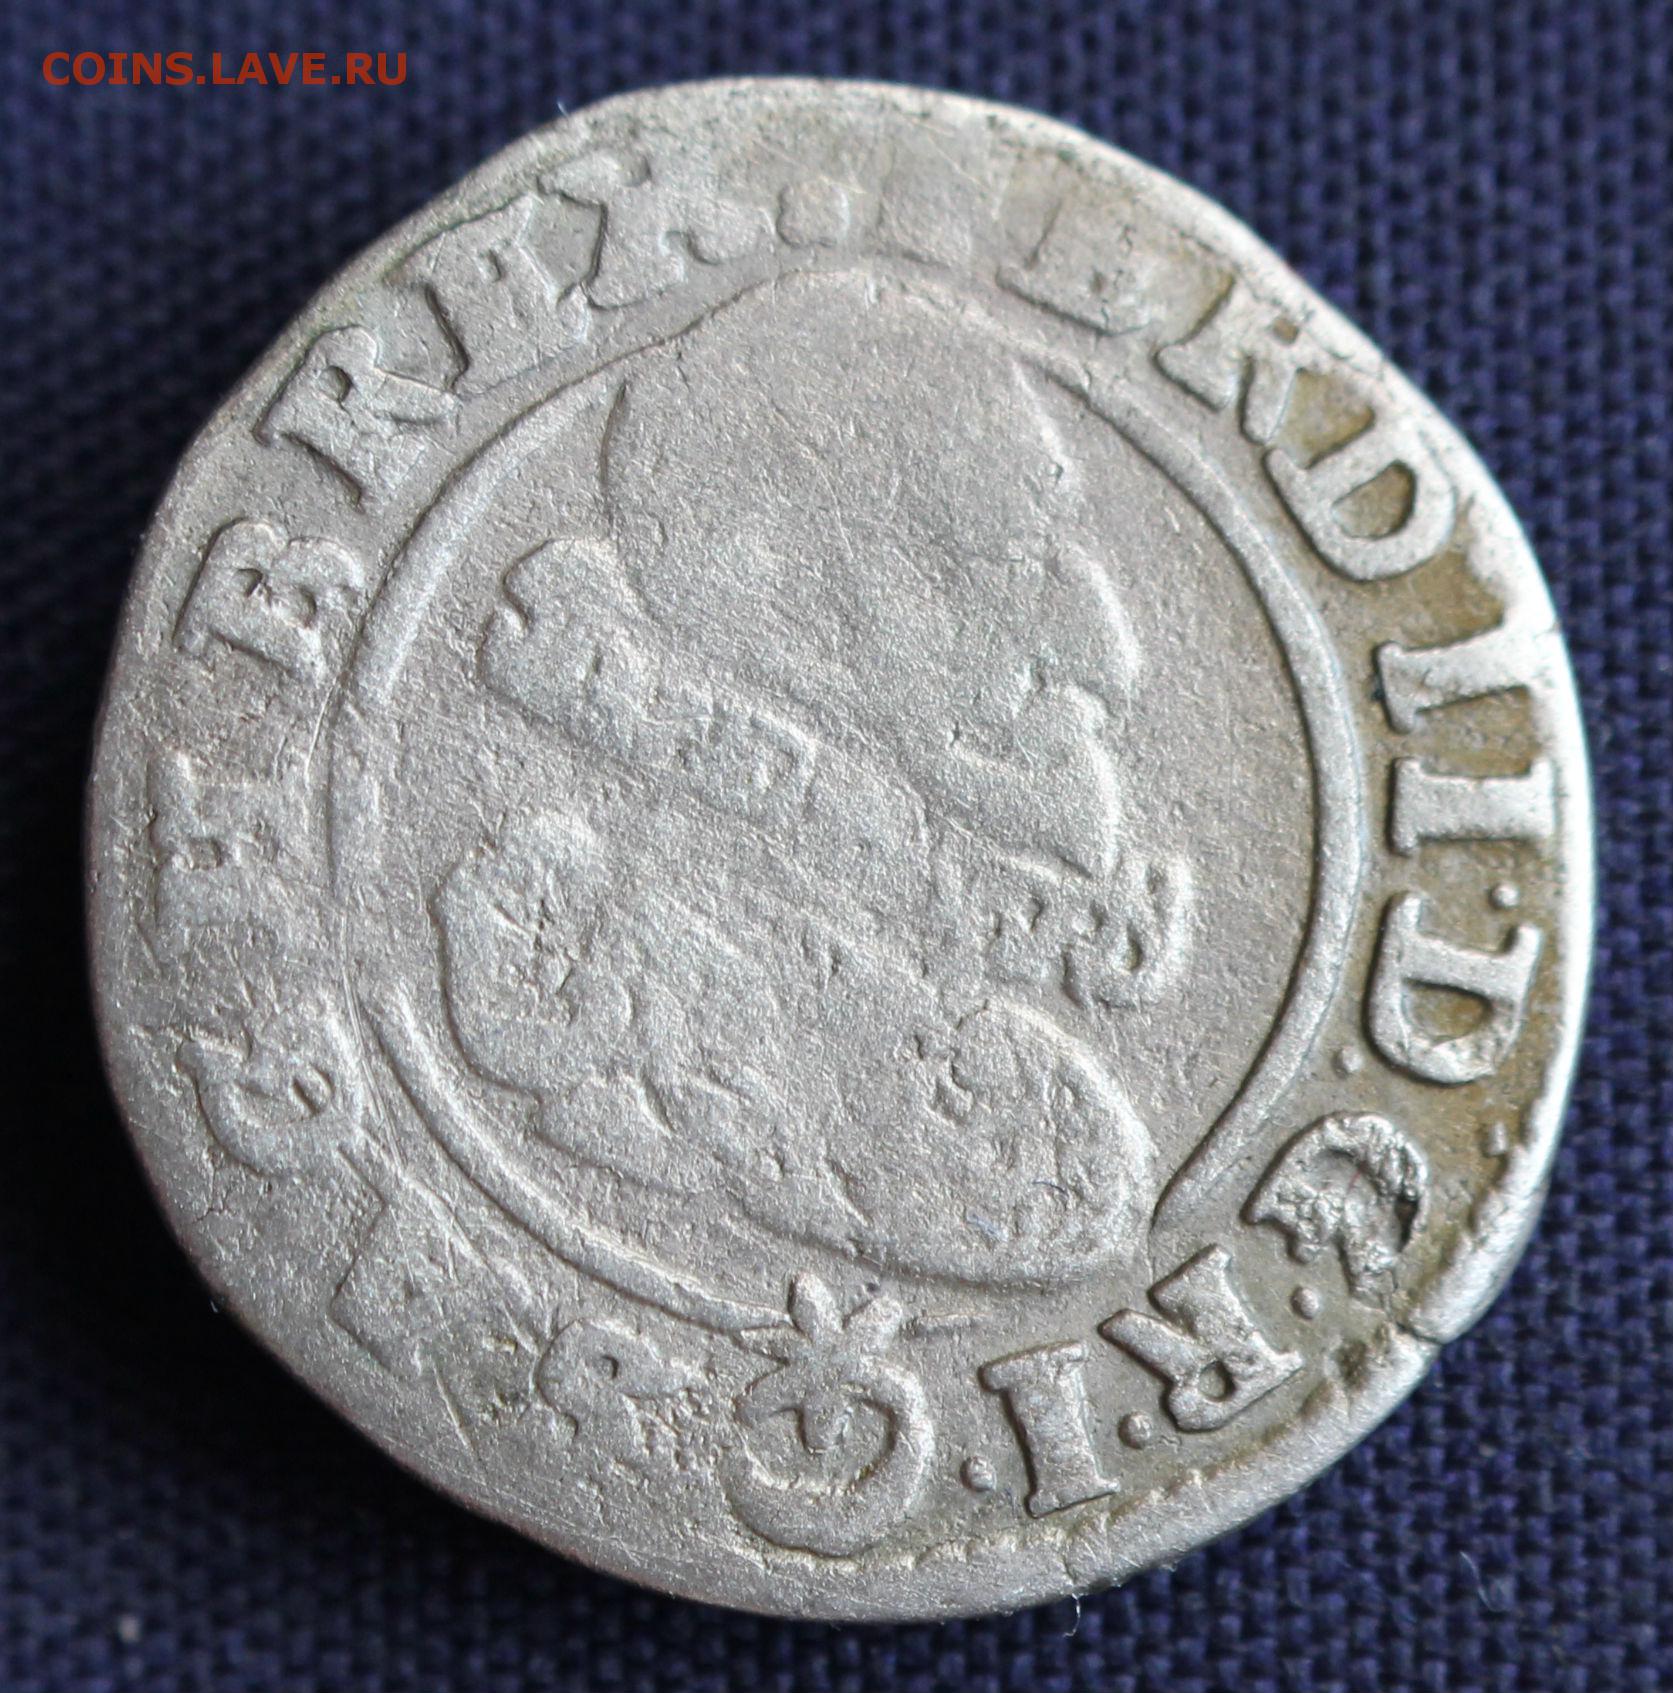 Add 19. Монета 60 крейцеров 1577. Монета священной римской империи 1591 три короны.